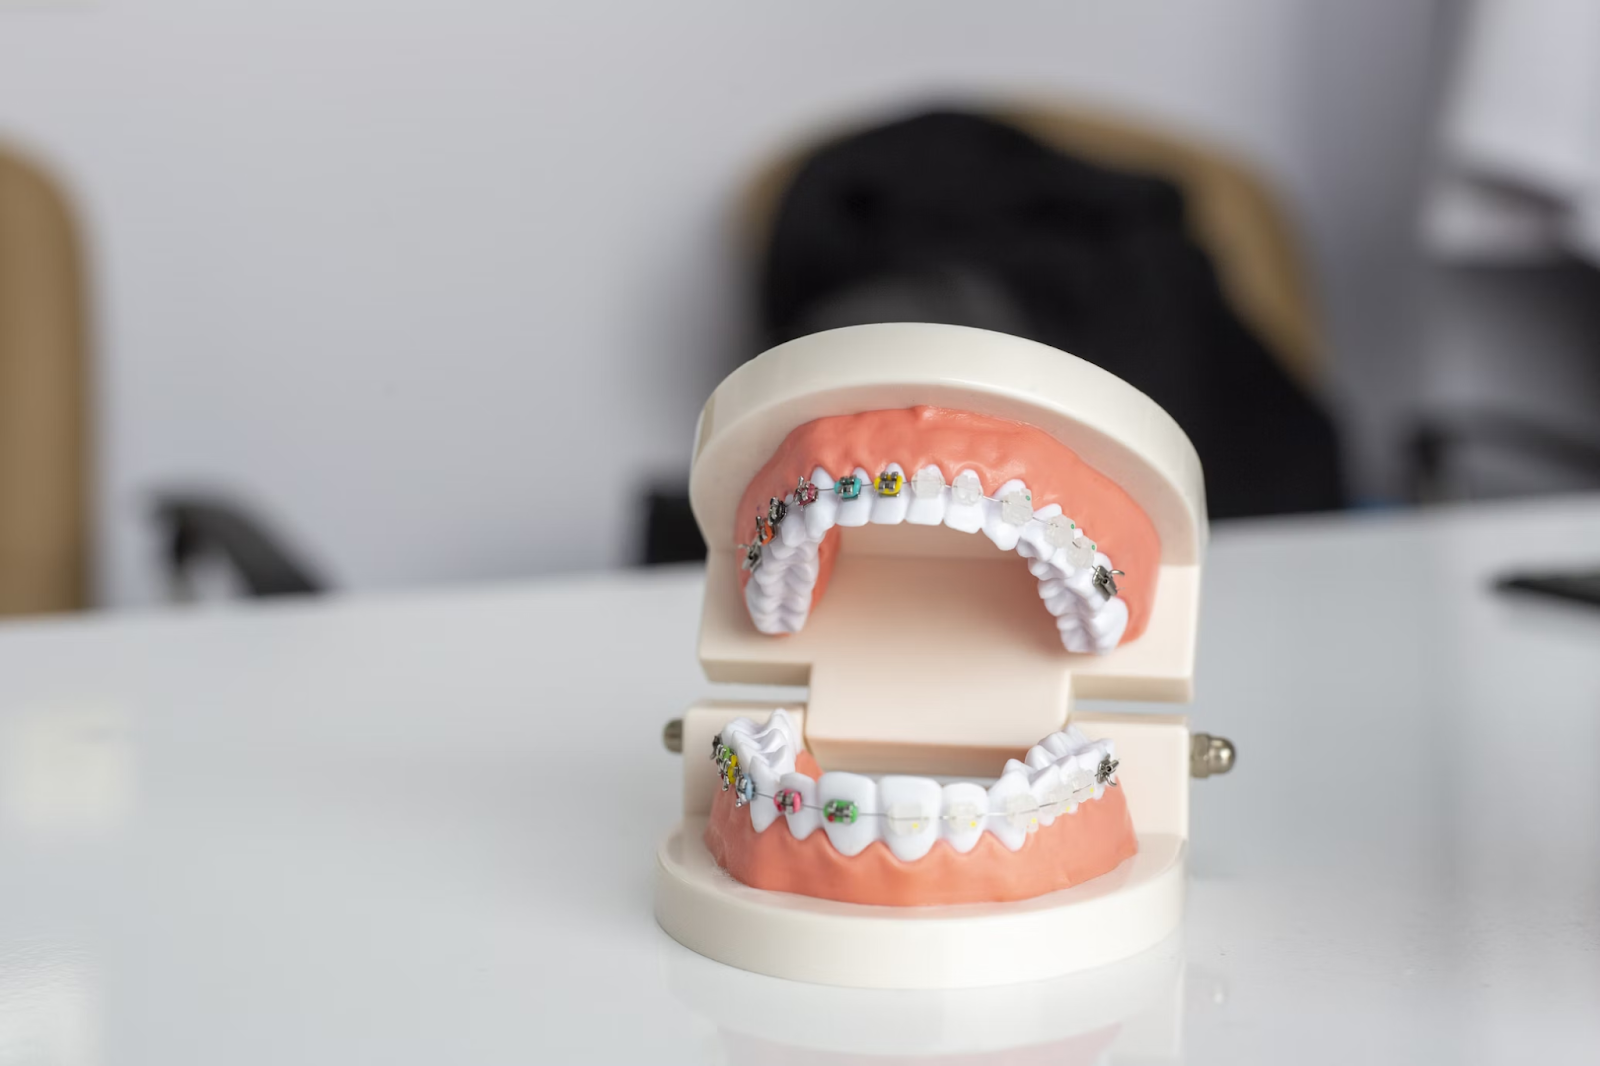 6 Warning Signs You May Need Teeth Implants